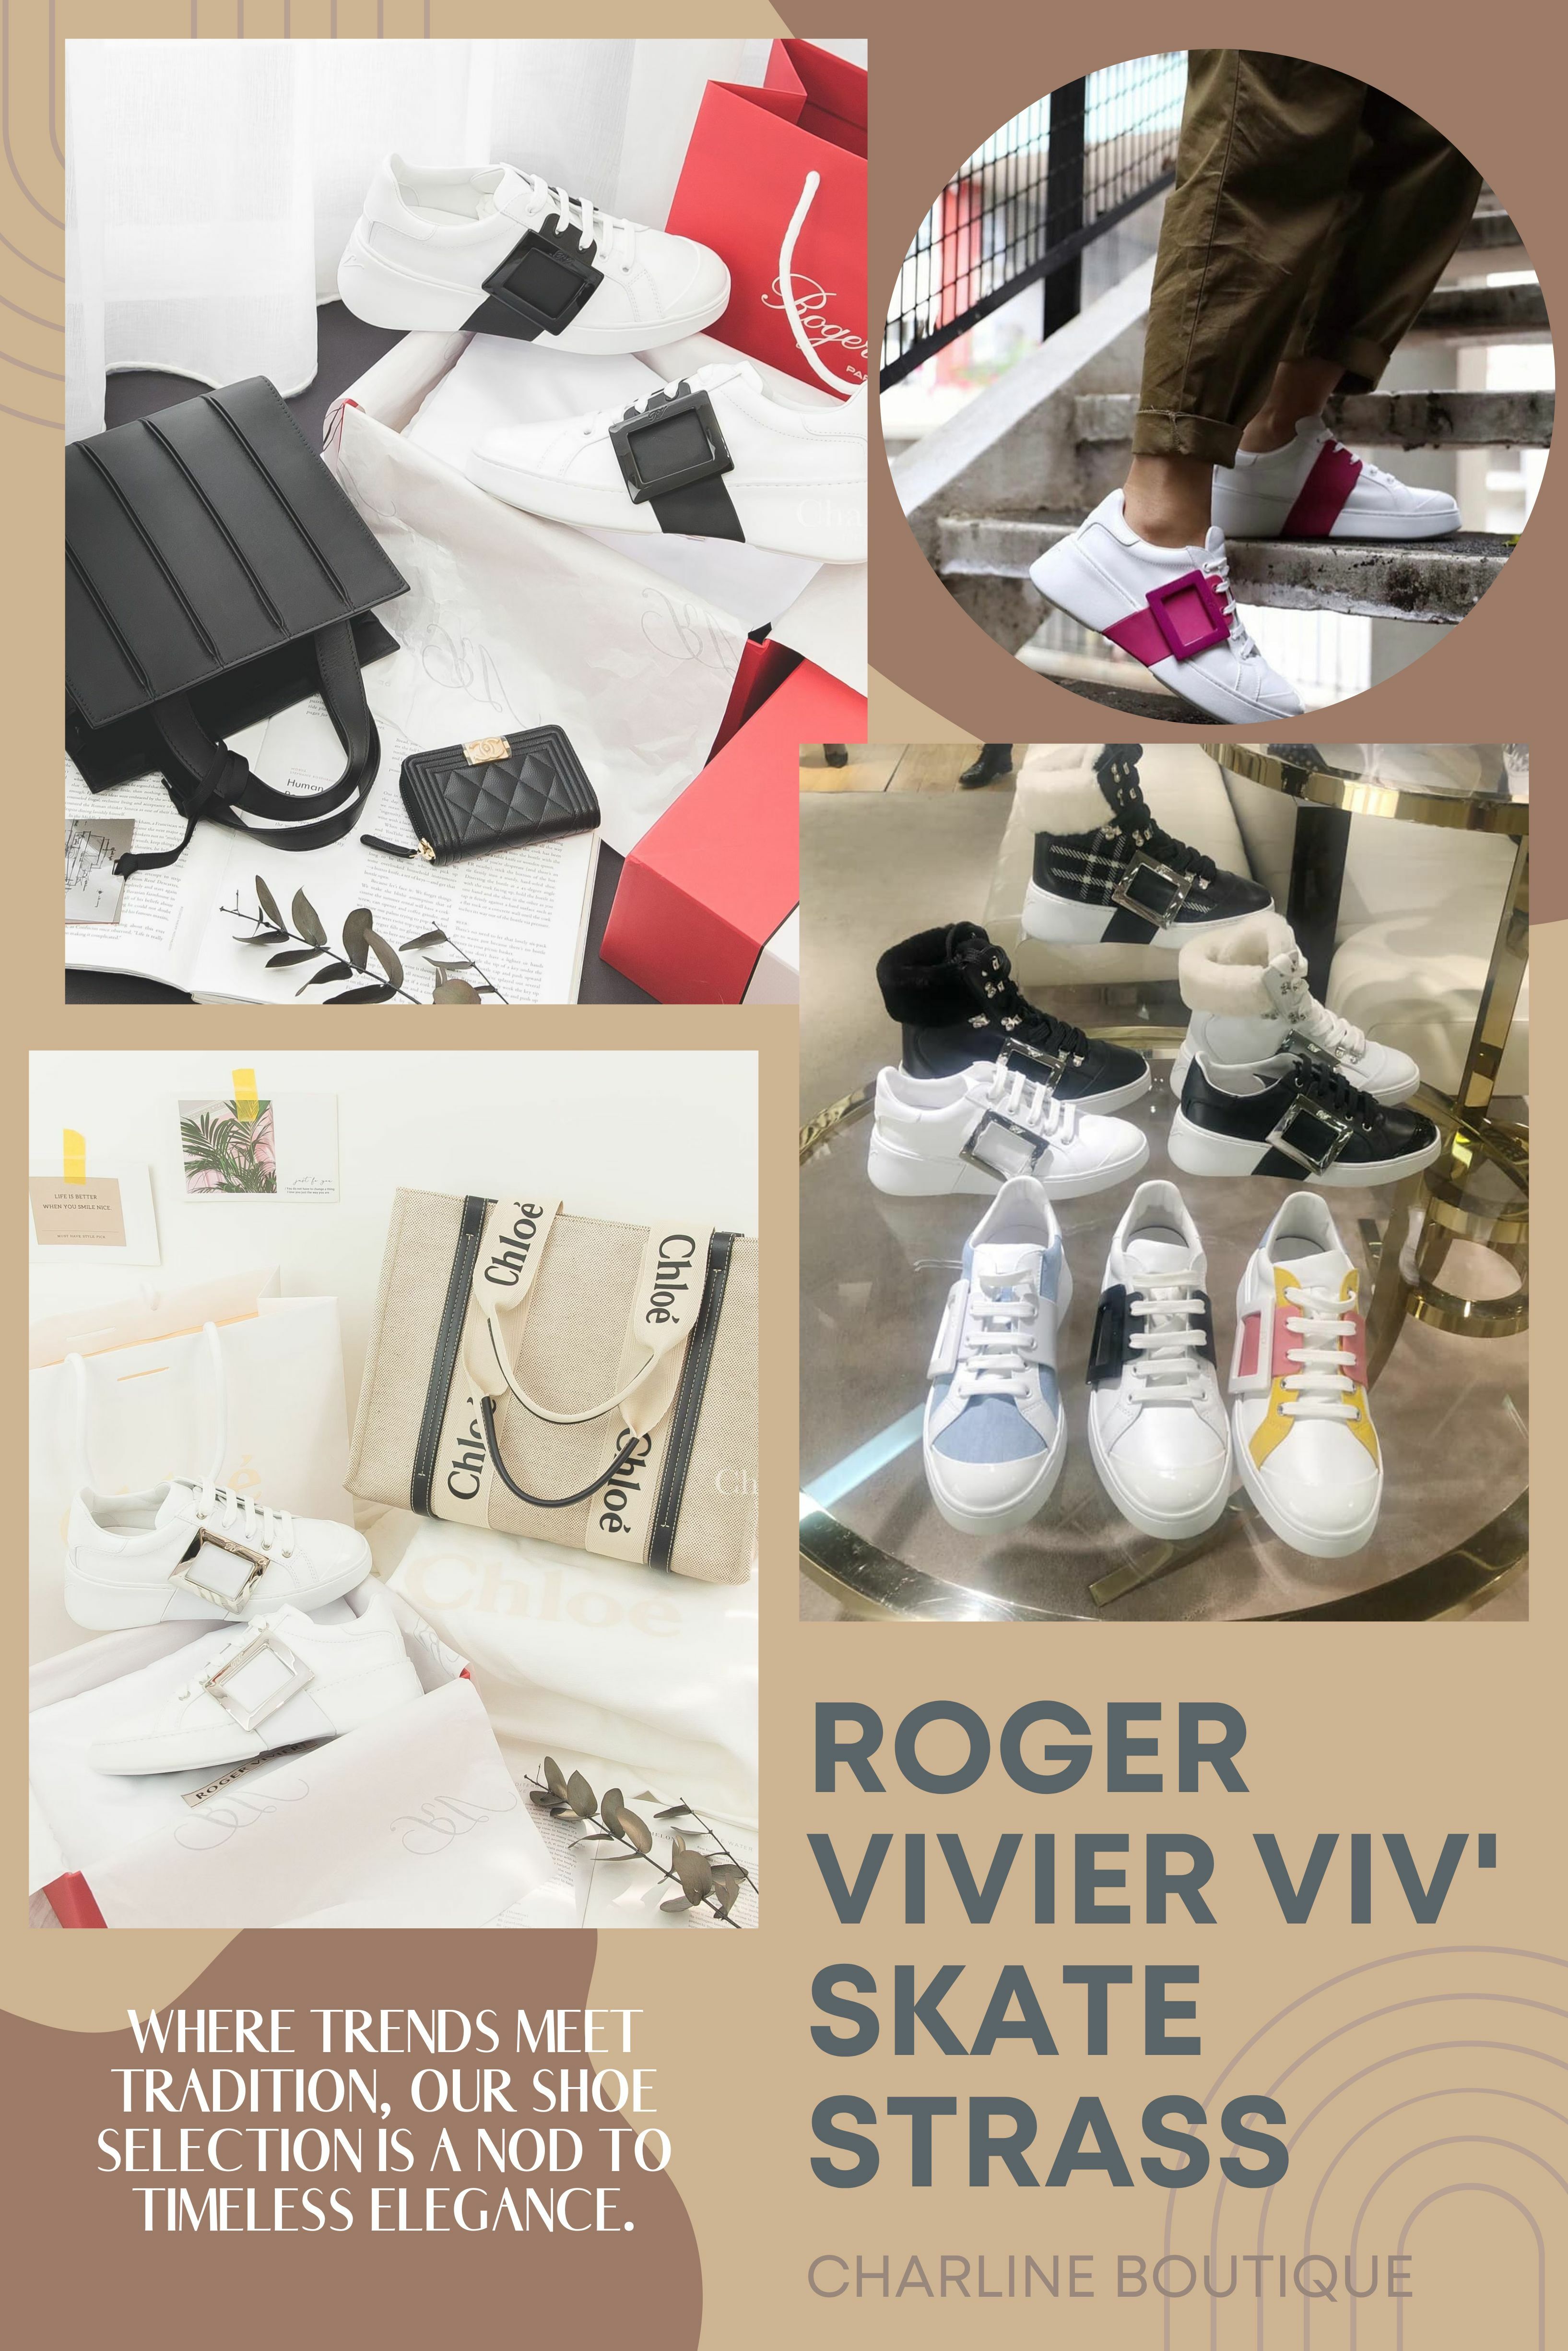 來聊聊Roger Vivier的Viv' Skate Sneaker，今年最夯的小白鞋之一！設計師Gherardo Felloni以70年代滑板文化為靈感，簡約的線條搭配皮革點綴，金屬方扣和水鑽釦增添華麗感，倍受矚目。何超蓮婚禮上穿著Vera Wang婚紗、Roger Vivier訂製鞋、Graff頭冠，搭配Dior高訂珠寶，光芒四射。Viv' Skate小白鞋不僅有出色的增高效果，輕柔小牛皮貼合腳型，側邊水鑽方扣引人注目，穿著舒適。